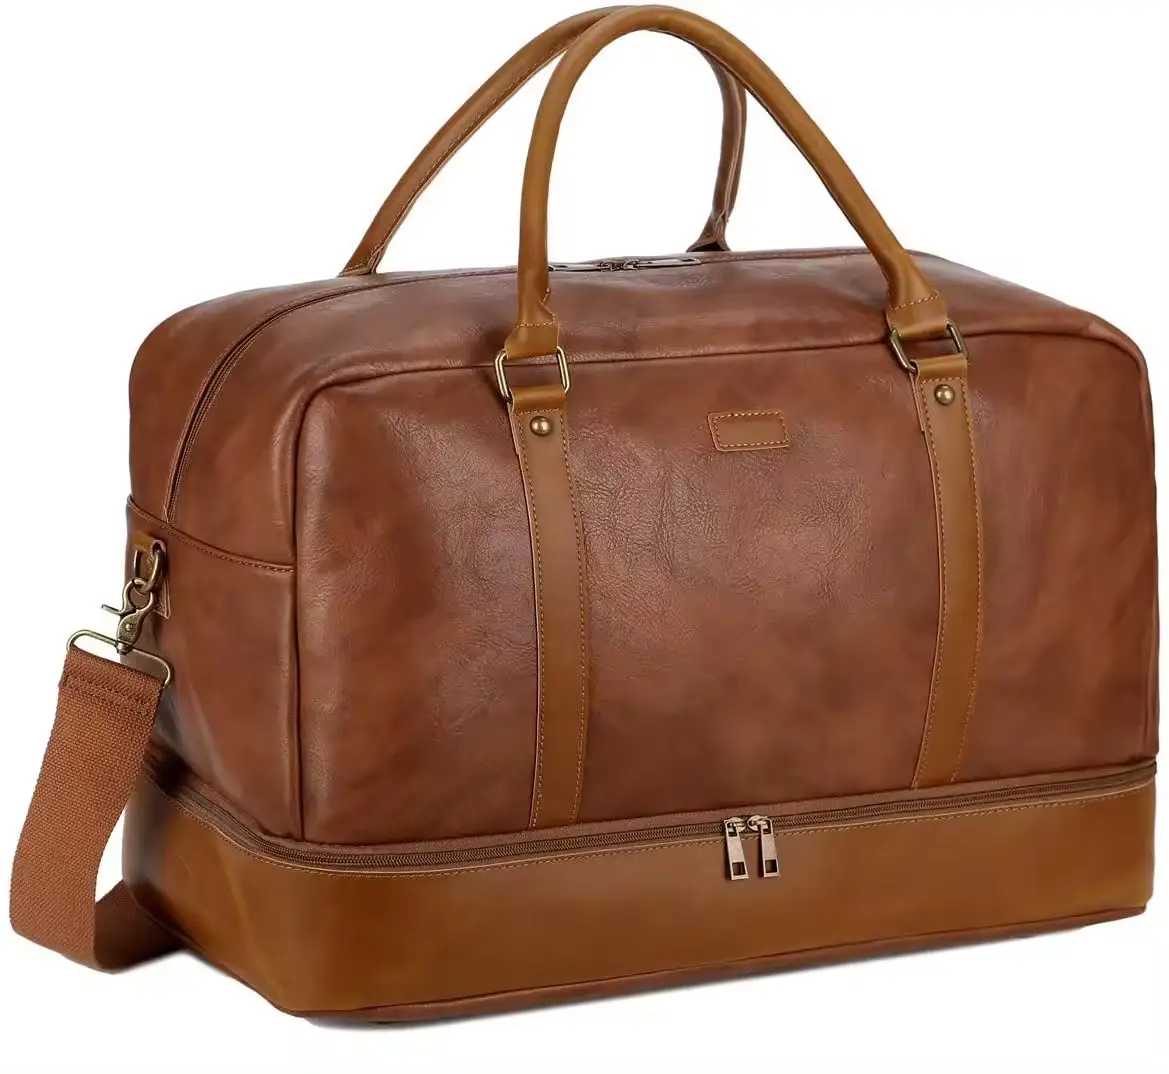 OEM hochwertige Leder-Reisetasche Wochenend-Übernachtungsbeutel wasserdichte große Reisetasche mit Schuhbeutel